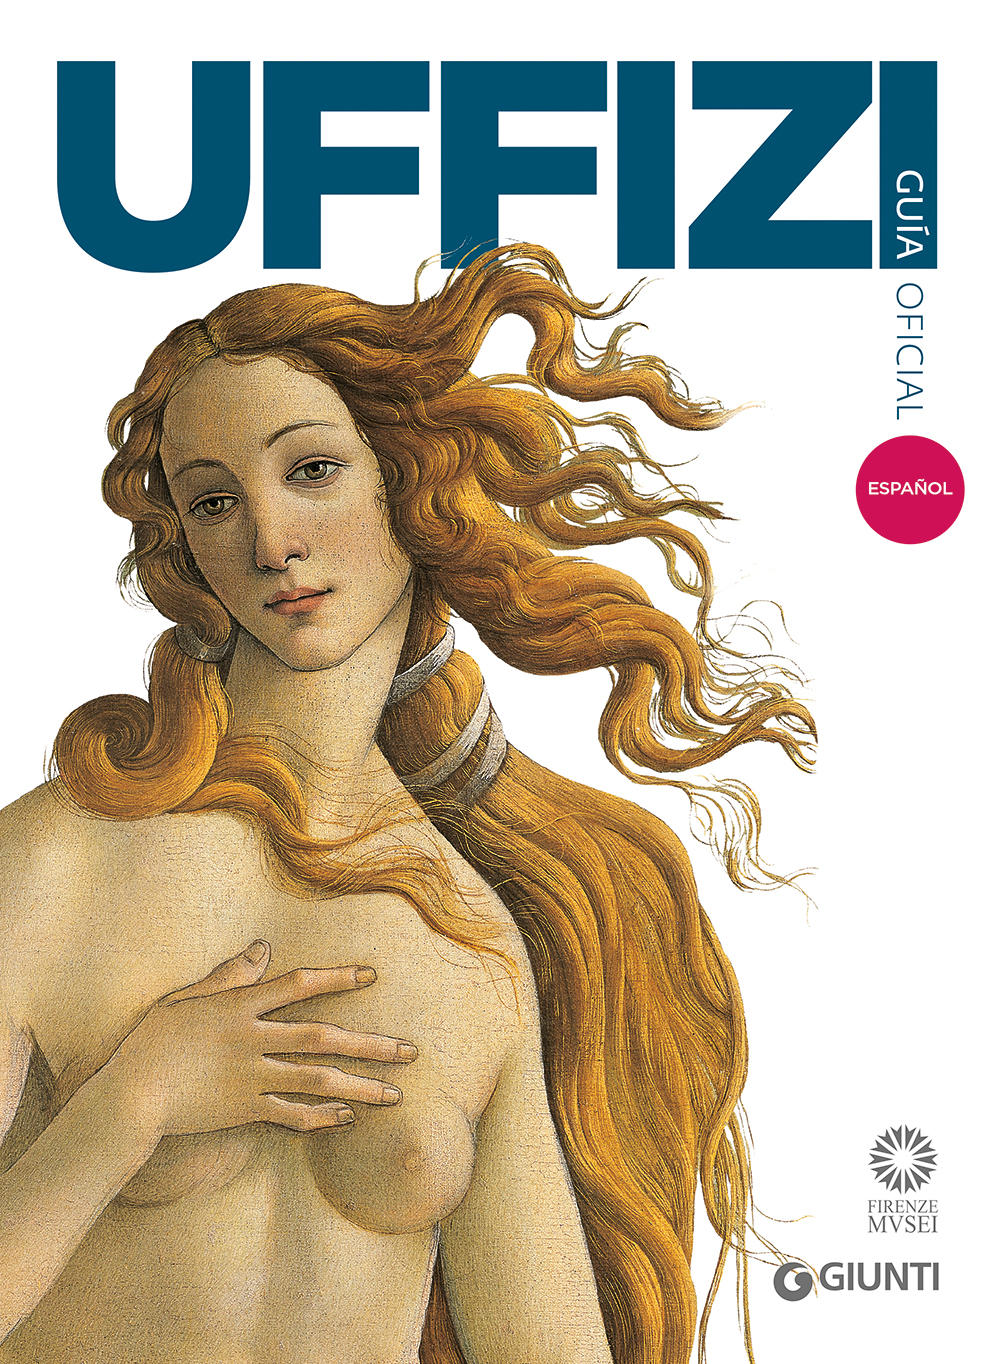 Galería de los Uffizi (in spagnolo). Guía oficial todas las obras - Edizione aggiornata